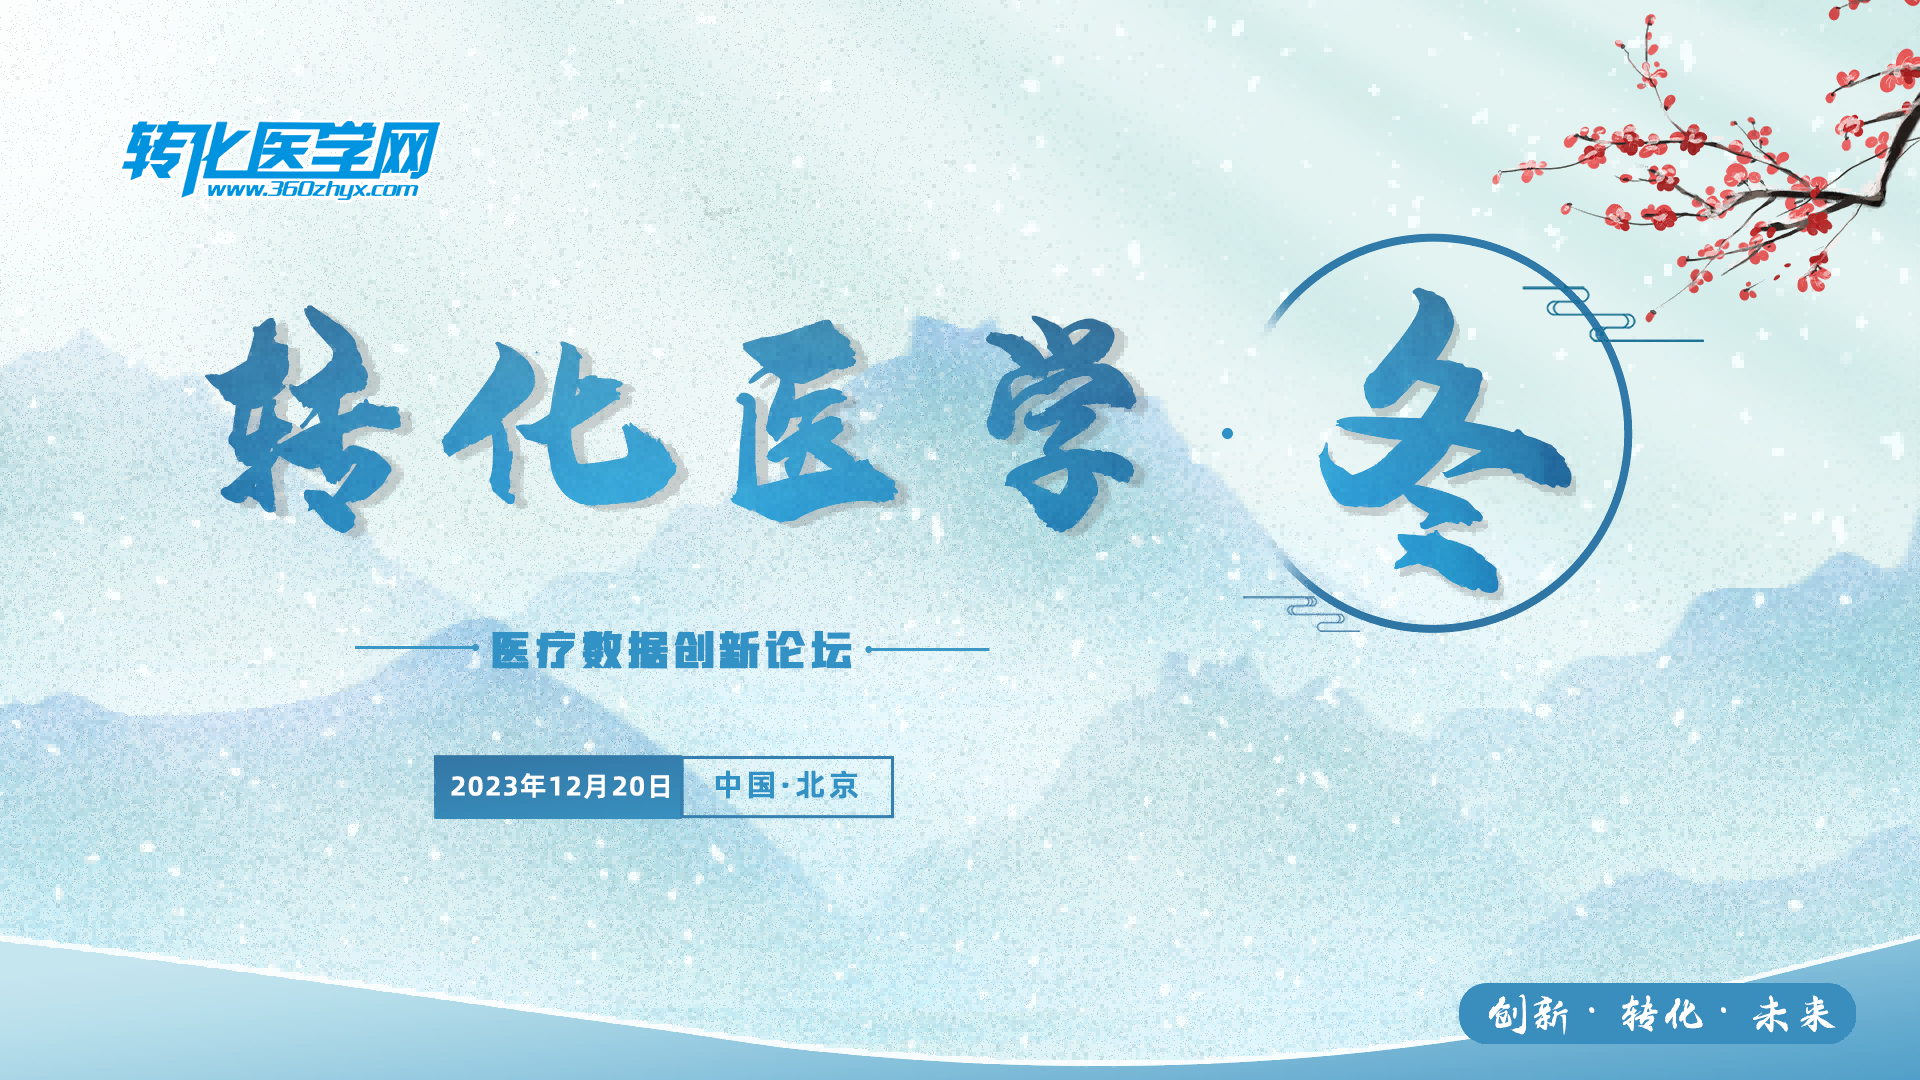 【邀请函】转化医学 · 冬 医疗数据创新论坛12月20日在北京举办，诚邀您的参与！